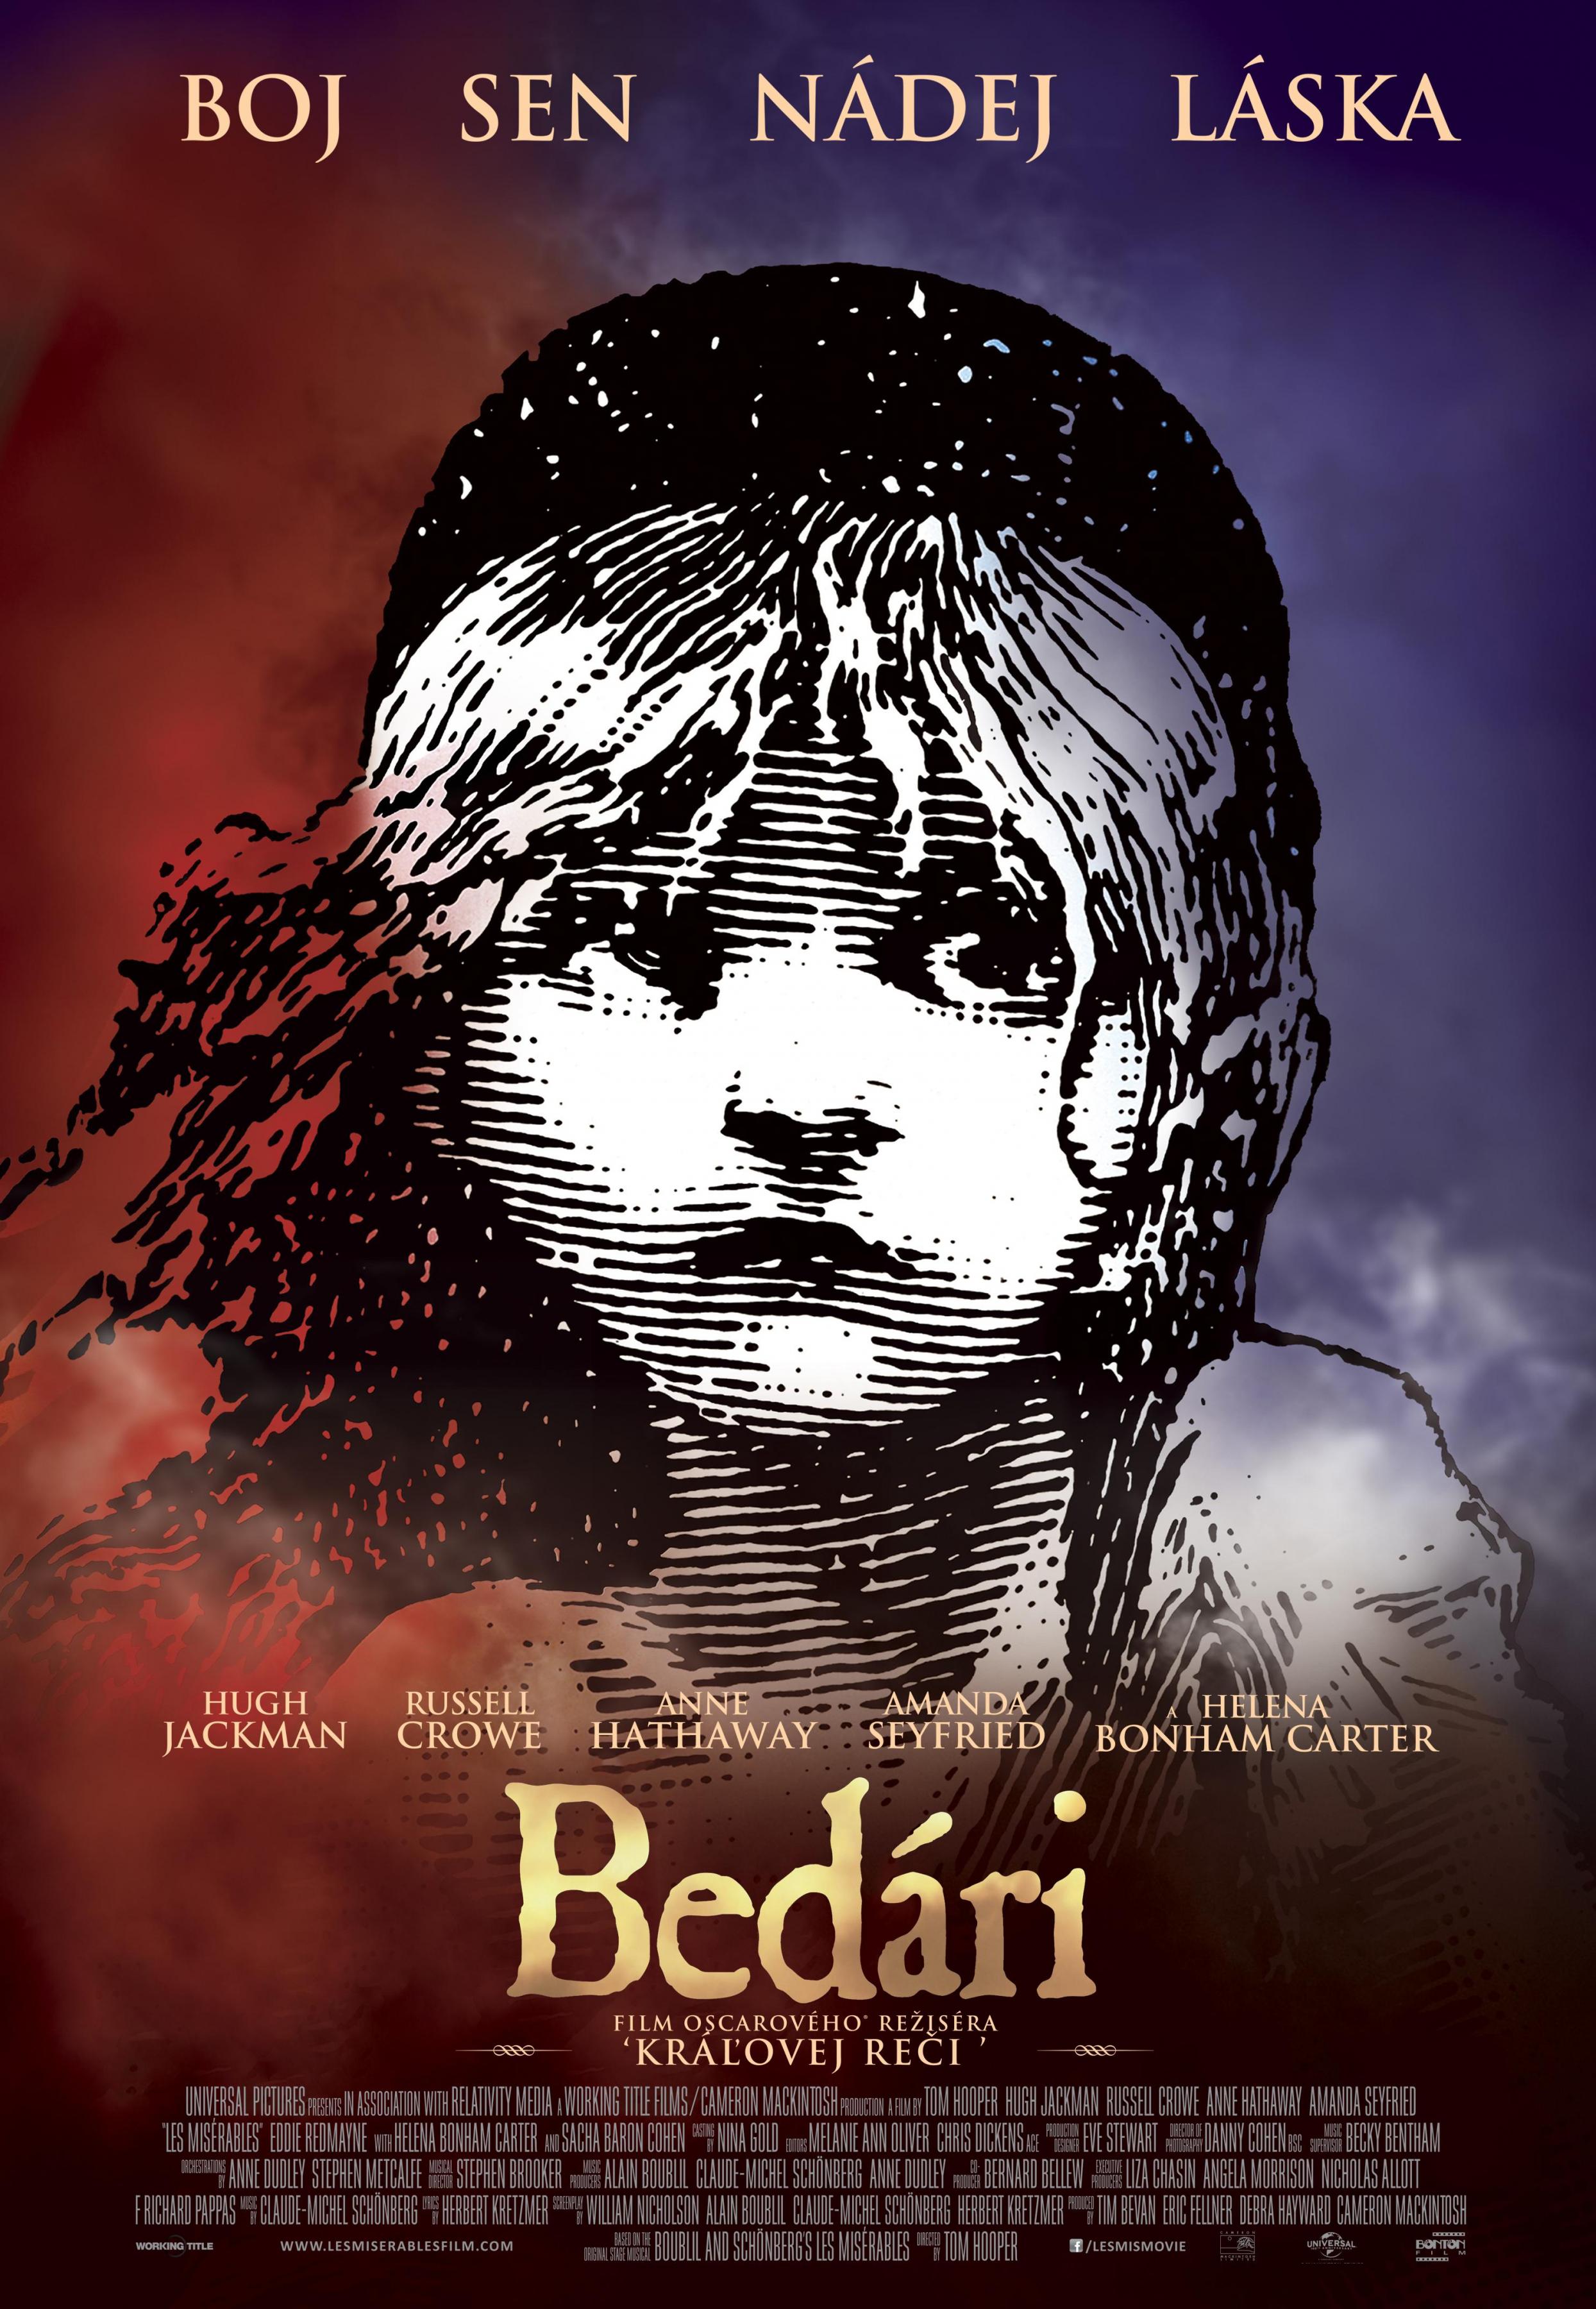 Постер фильма Отверженные | Les Misérables